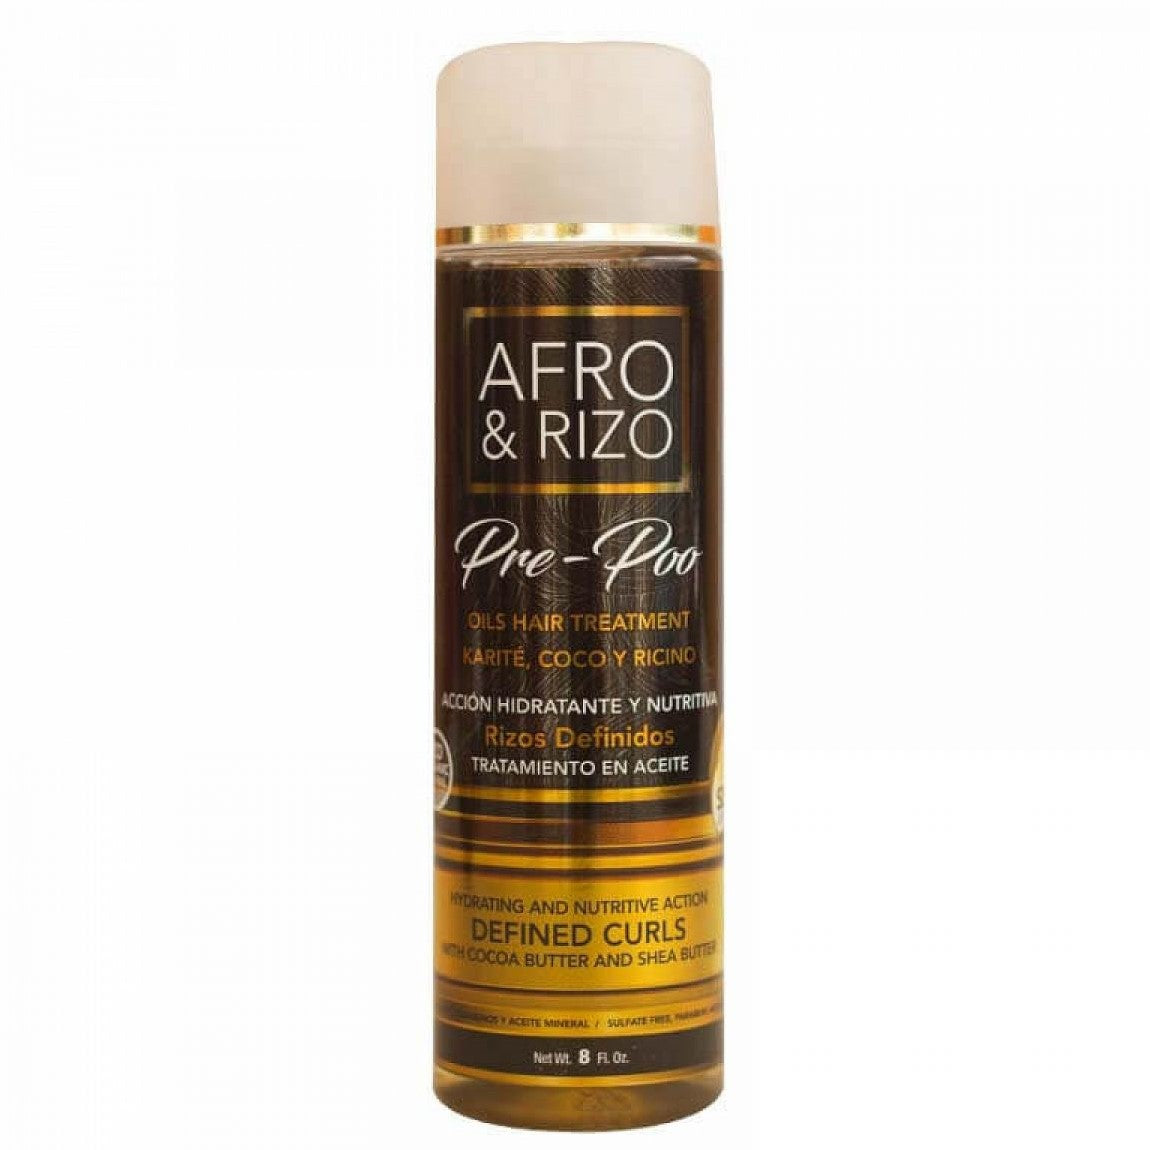 Afro & Rizo Pre-Poo Oil Hair Treatment 8 oz